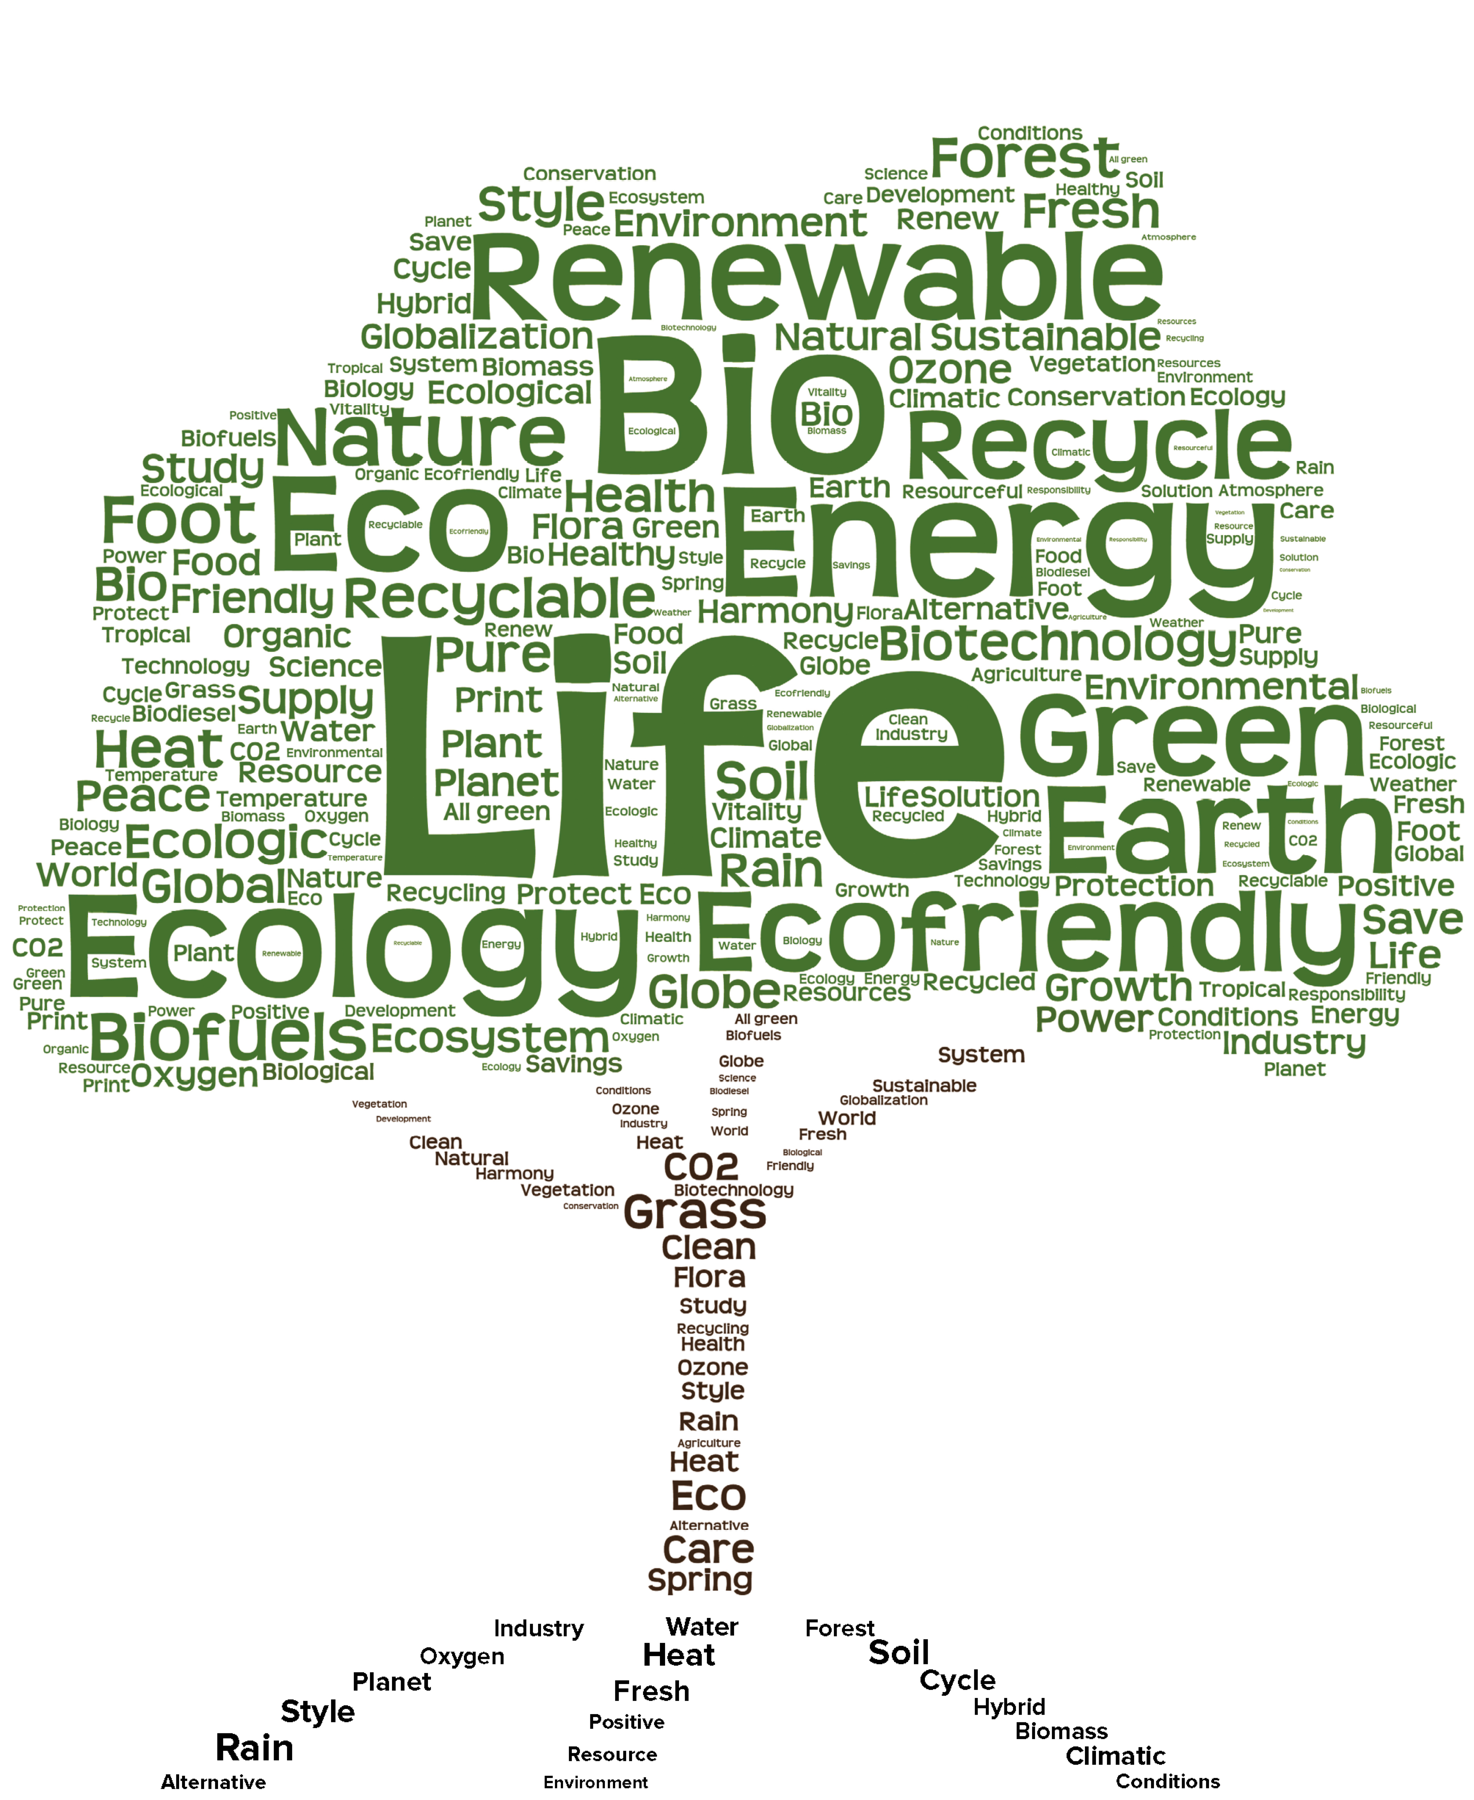 ilustração. Uma nuvem de palavras com o formato de árvore. Na parte superior, copa em verde, composta por várias palavras. As maiores são: Life, Bio, Ecology, Ecofriendly, Energy, Green, Earth, Eco, Renewable, Recycle, Biofuels, Forest etc. Na parte inferior, tronco em marrom com raízes na parte inferior, compostos com palavras. As maiores são: CO2, Grass, Clean, Eco, Car, Spring. Nas raízes: Style, Rain, Heat, Fresh, Soll, Cycle.